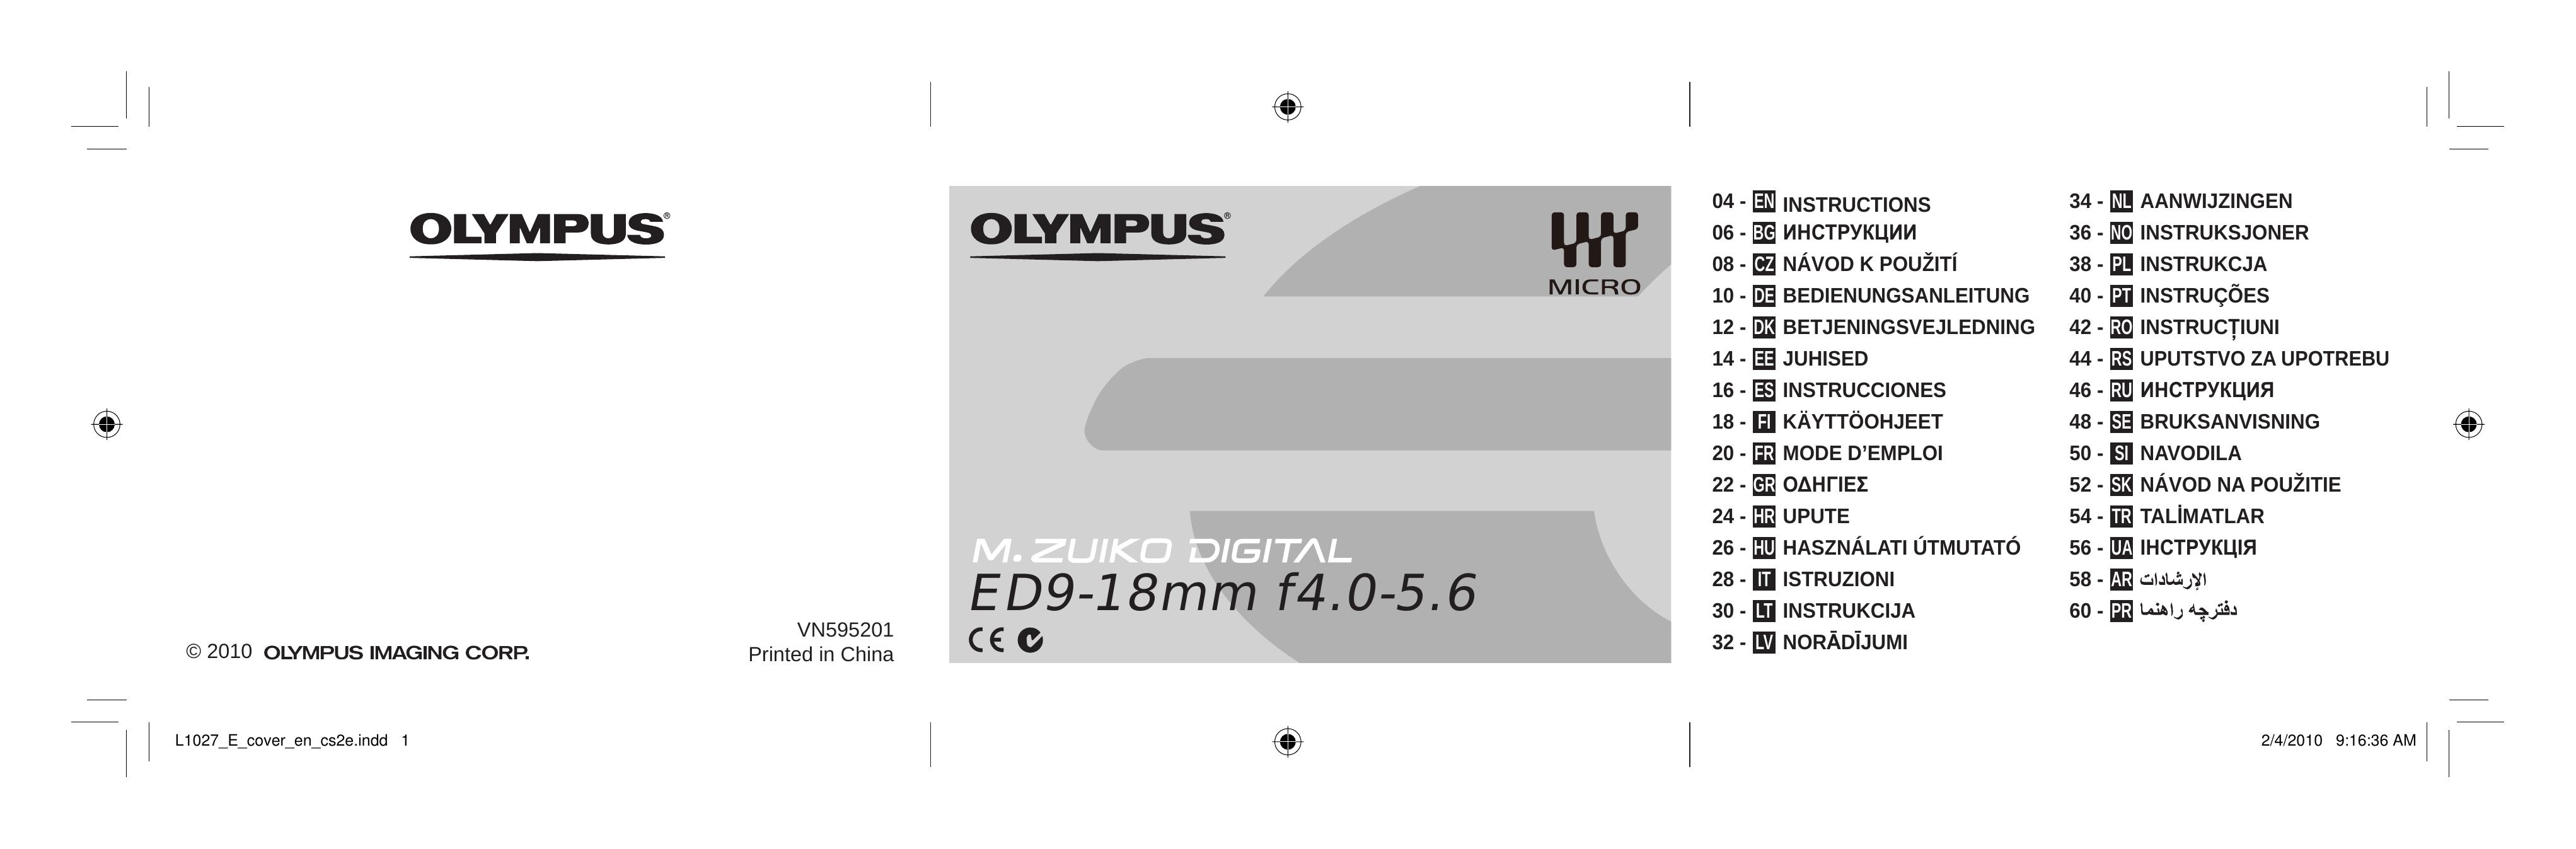 Olympus 261503 Camera Lens User Manual